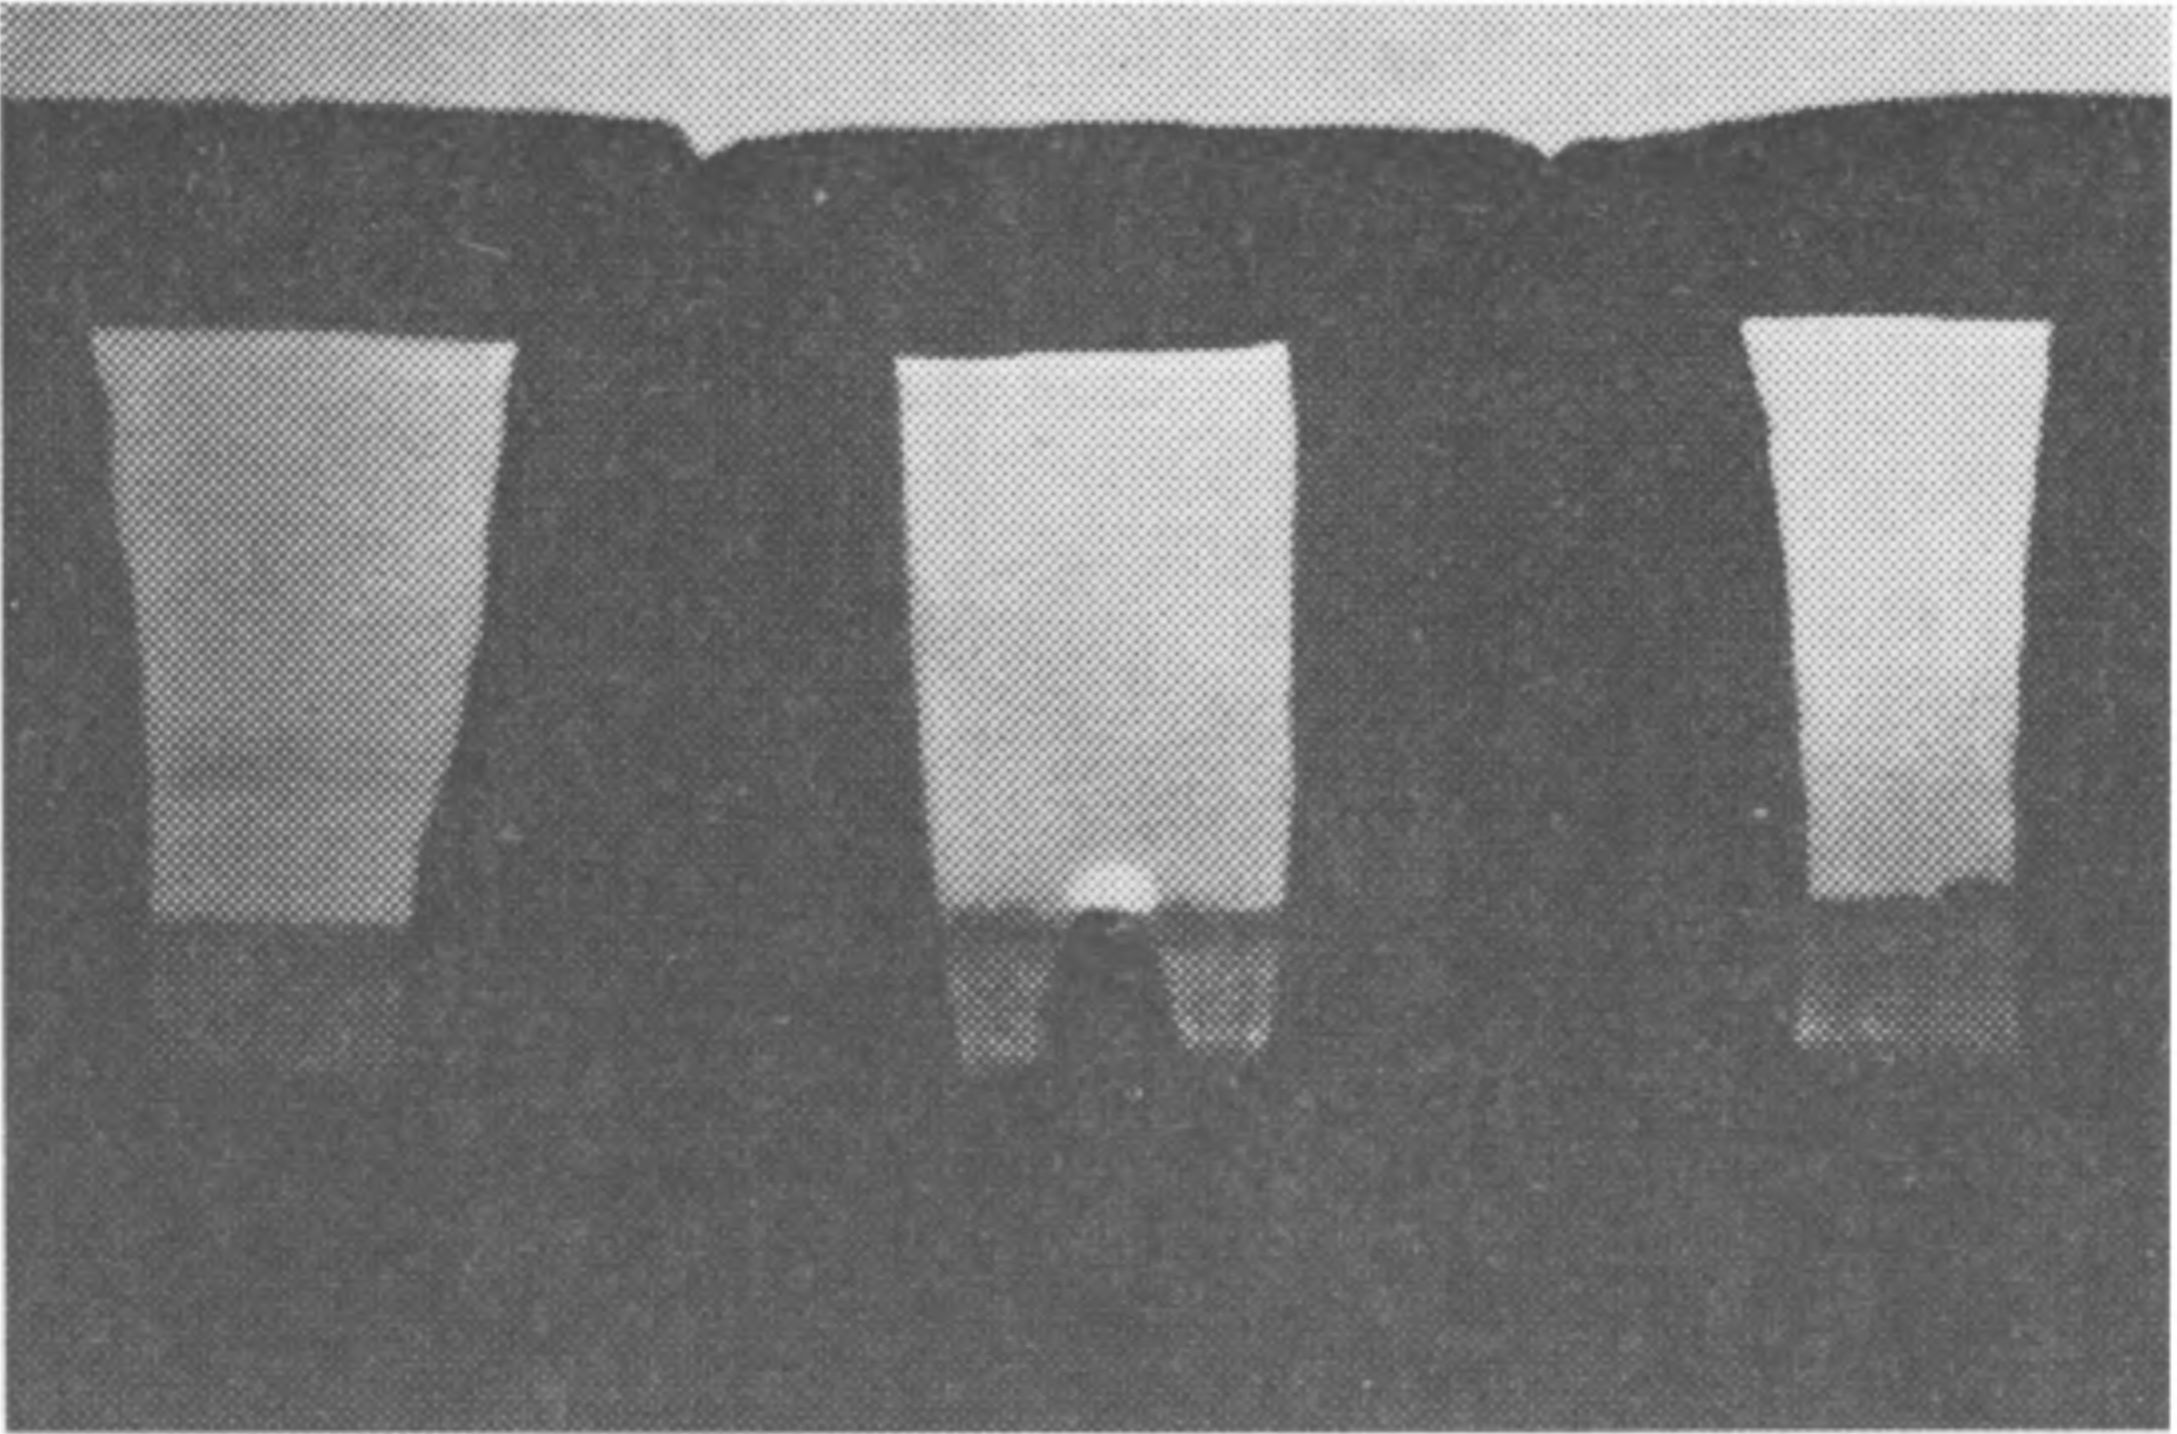 Фото 17. Снимок восхода Солнца 20 июня 1964 г., сделанный широкоугольным объективом